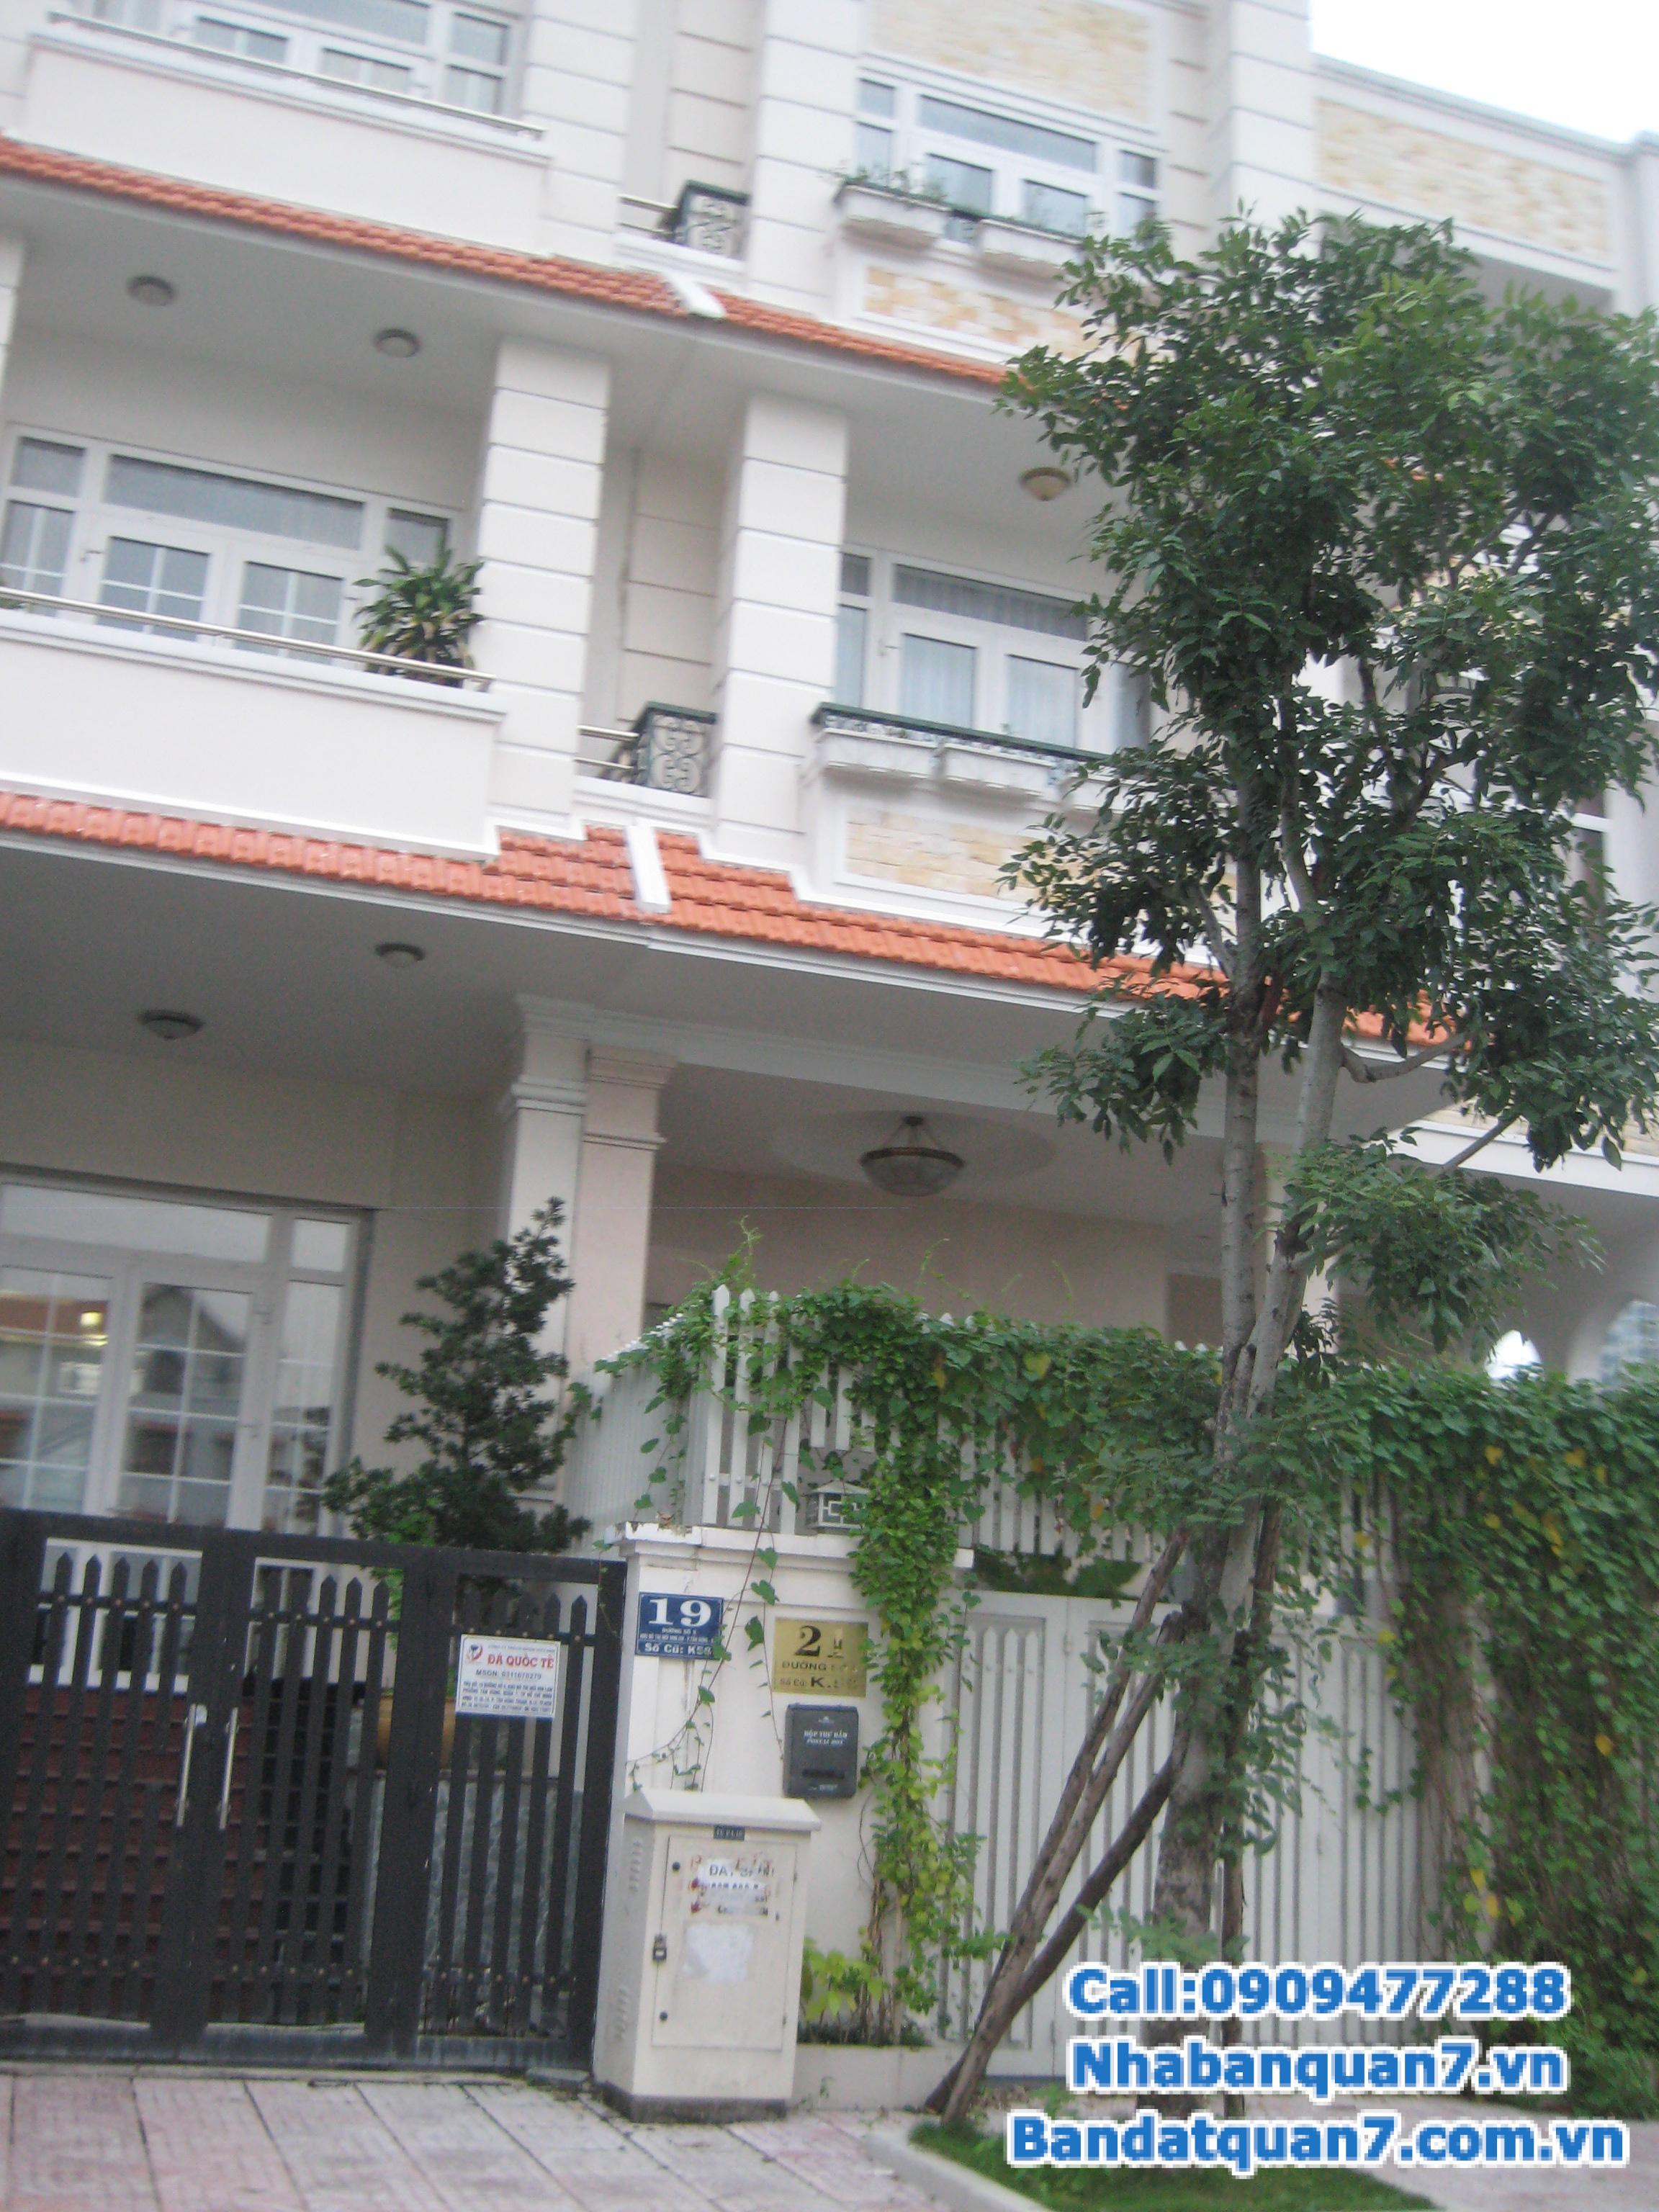 Bán nhà mặt tiền đường số khu dân cư Tân Quy Đông, phường tân phong, Q.7